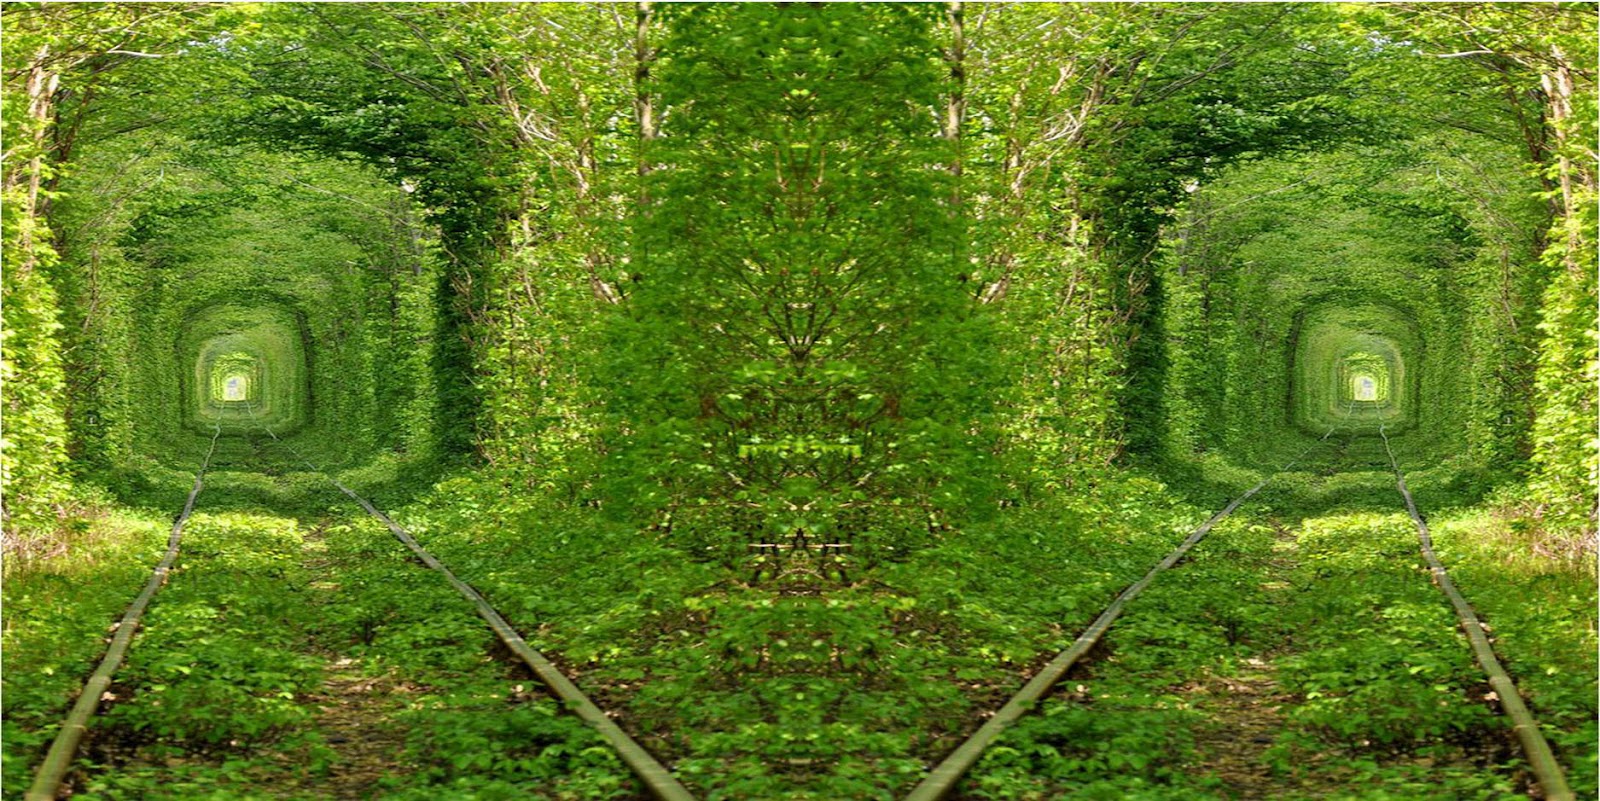 http://4.bp.blogspot.com/-4kh3K0QpzF0/UEhemliQfzI/AAAAAAAAA8g/HLGMtuILIqA/s1600/beautiful-green-tunnel-nature-background-wallpaper-for-laptop-widescreen.jpg